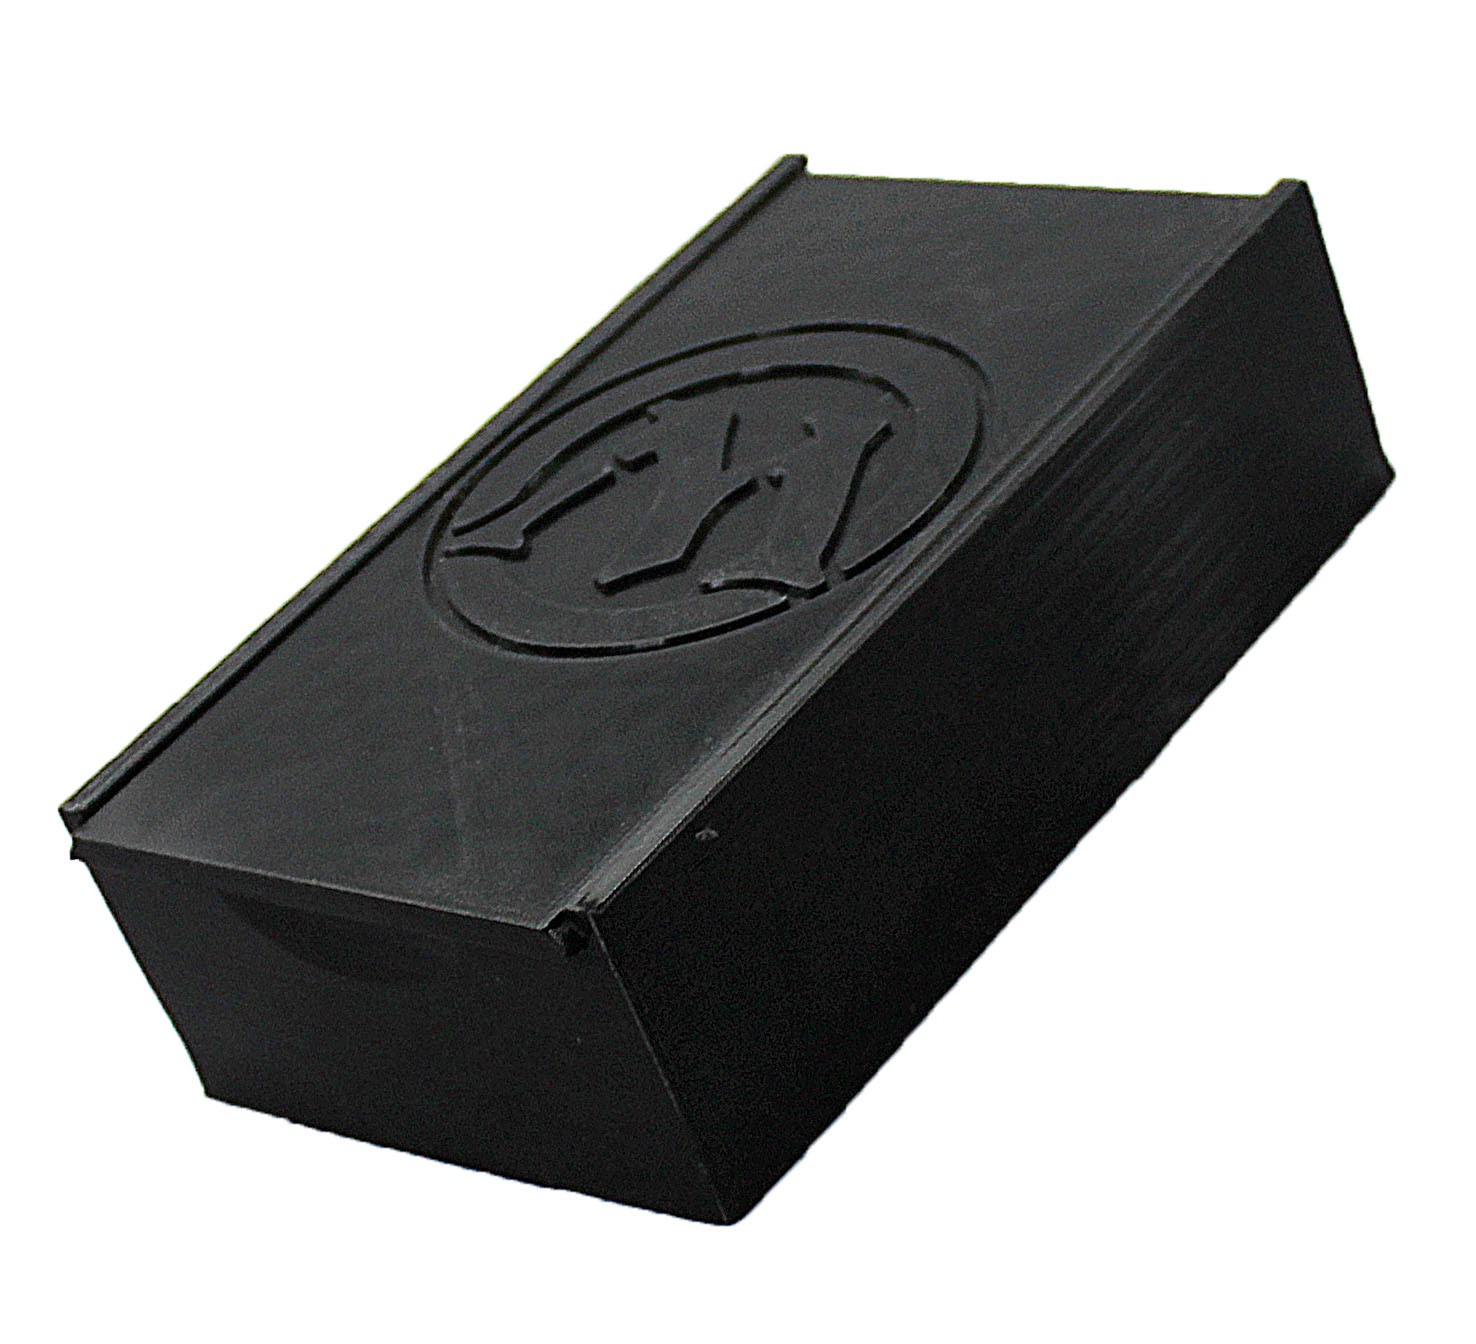 Deckbox Magic Caixa para baralho card game - Dragon Store